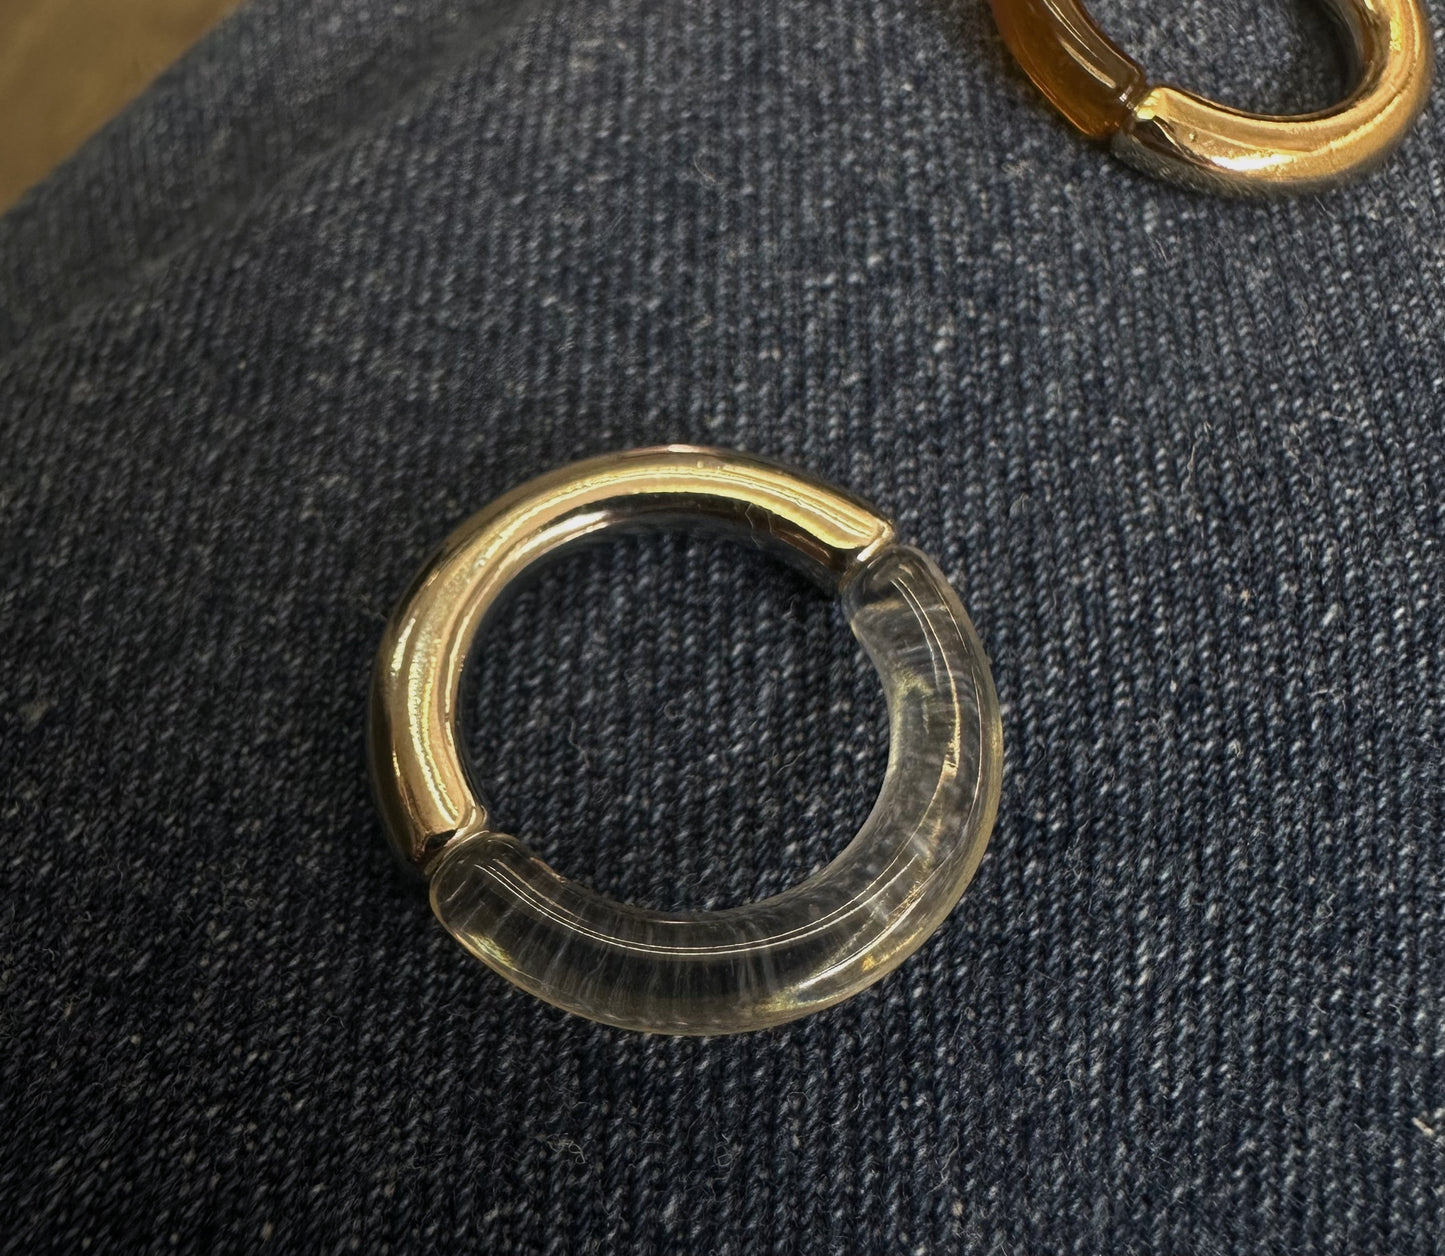 Metal ring